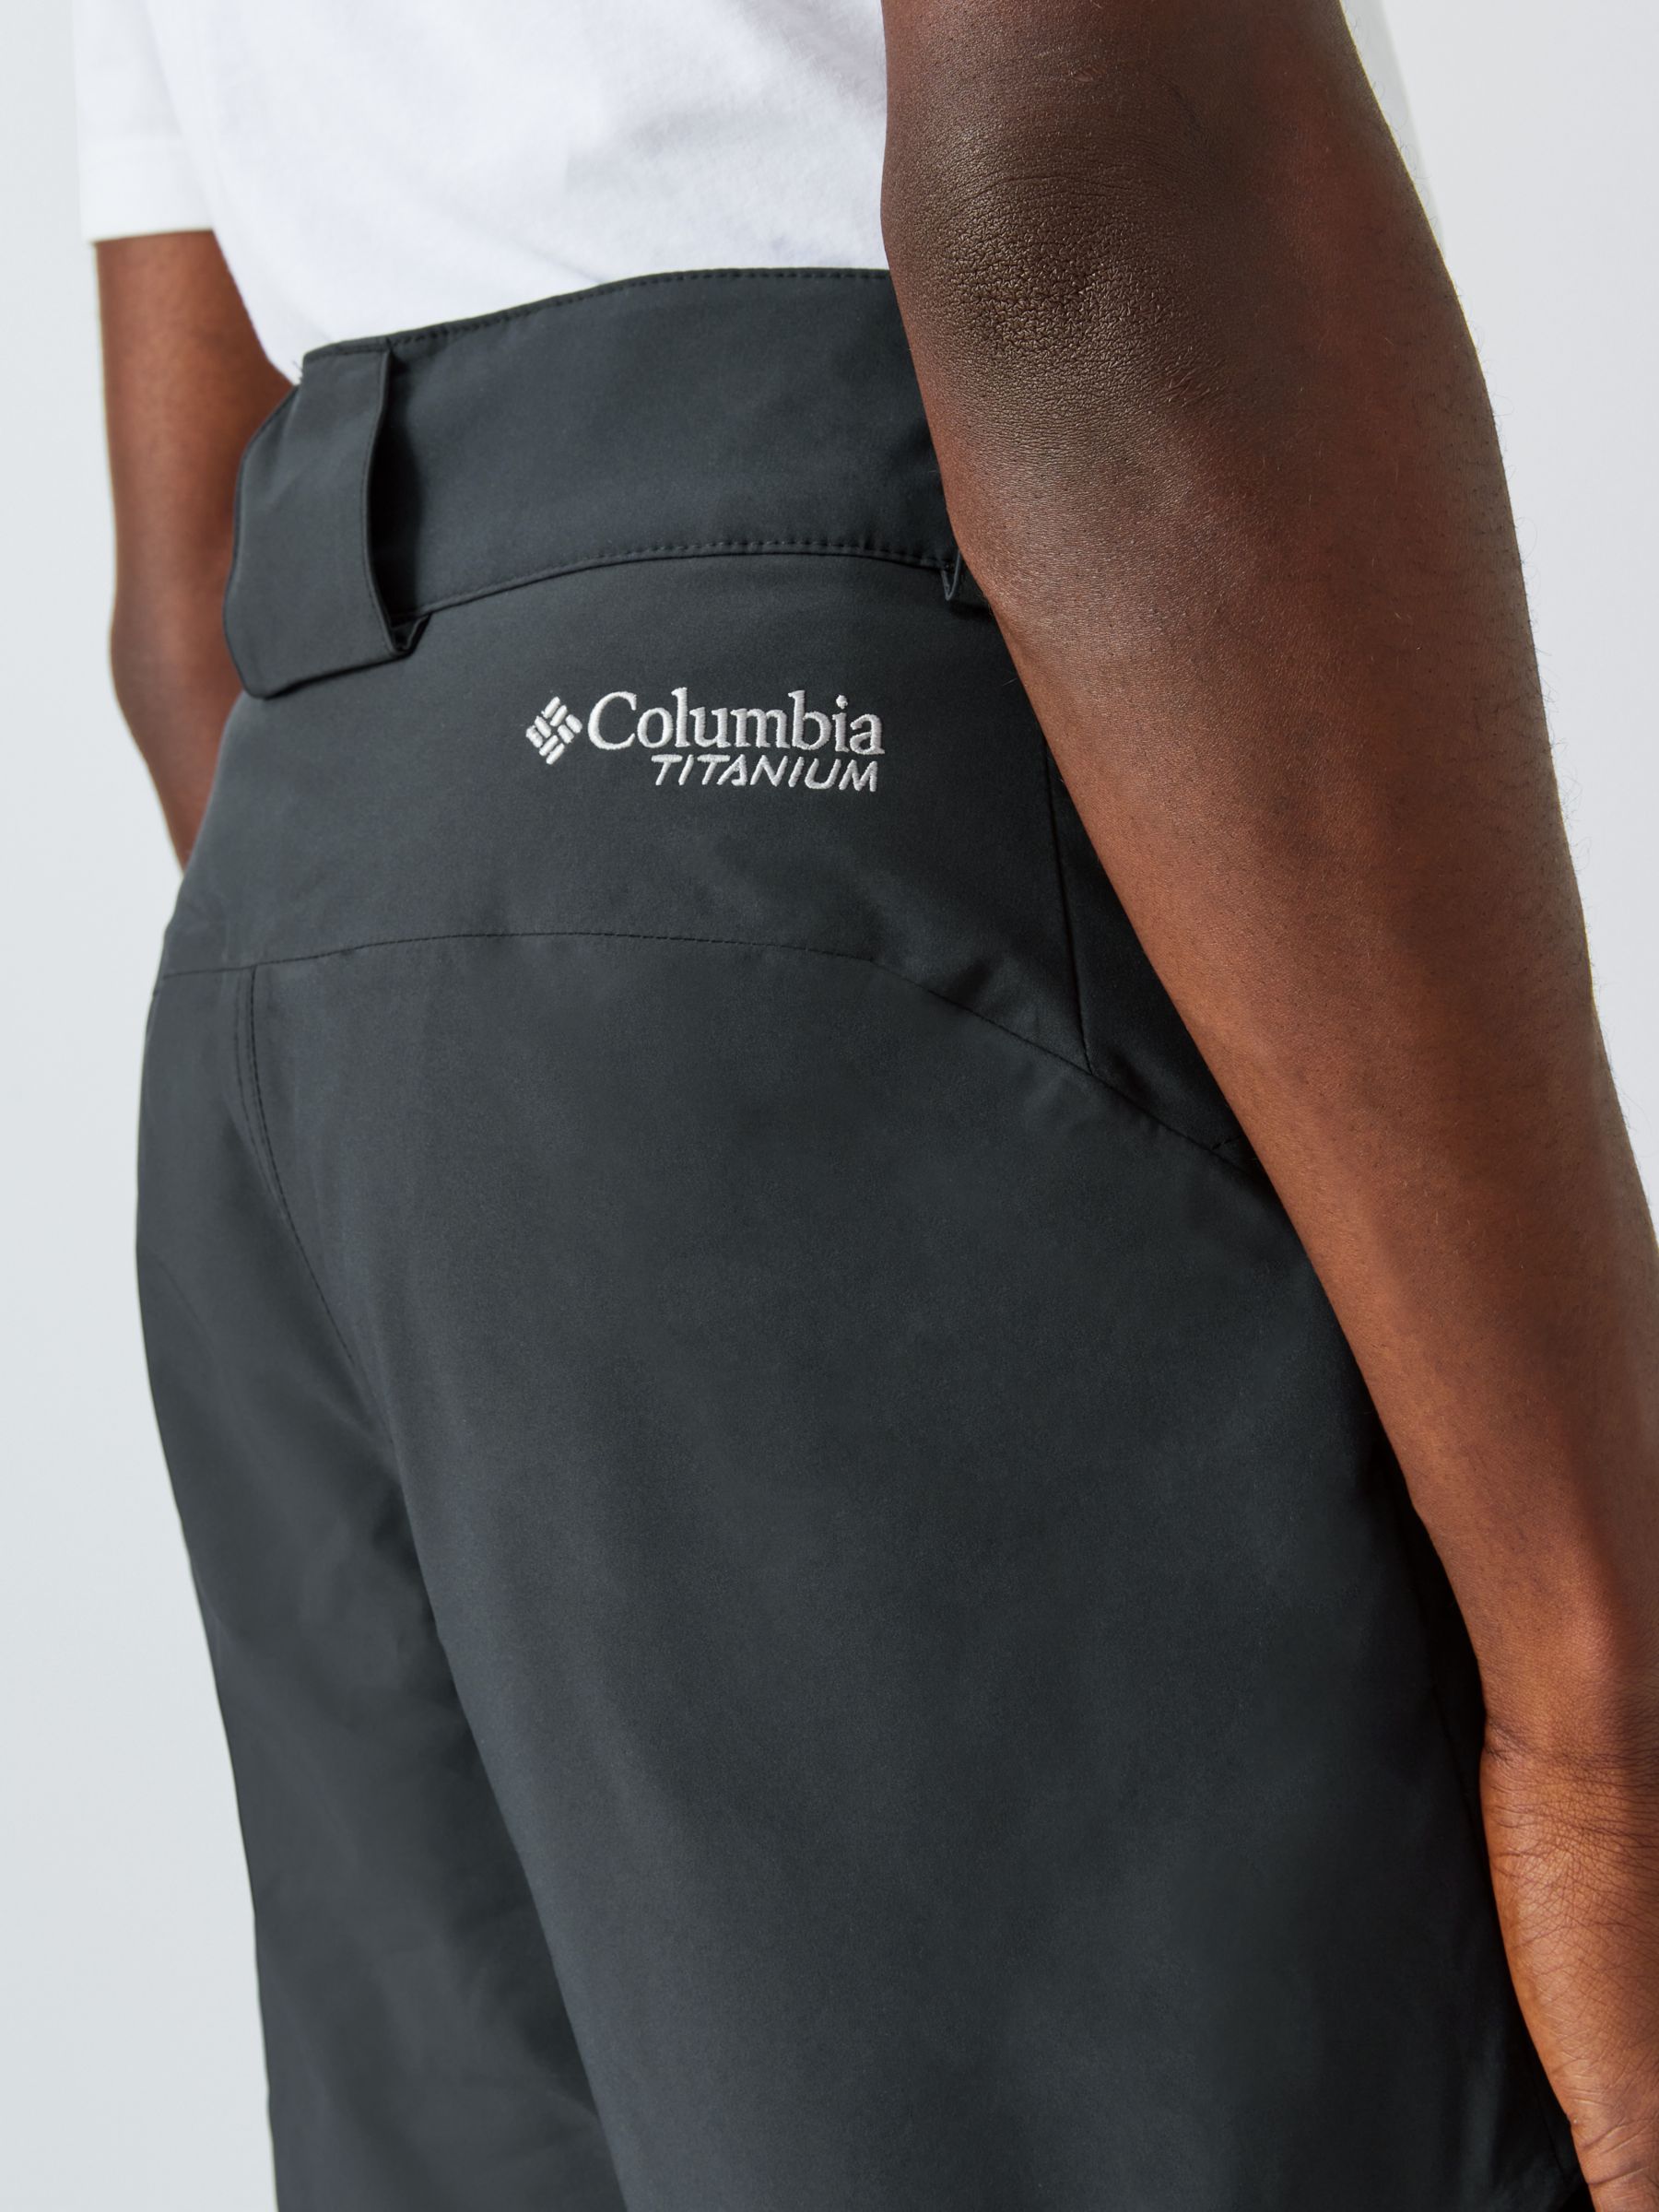 Columbia Kick Turn Men's Ski Trousers, Black, S